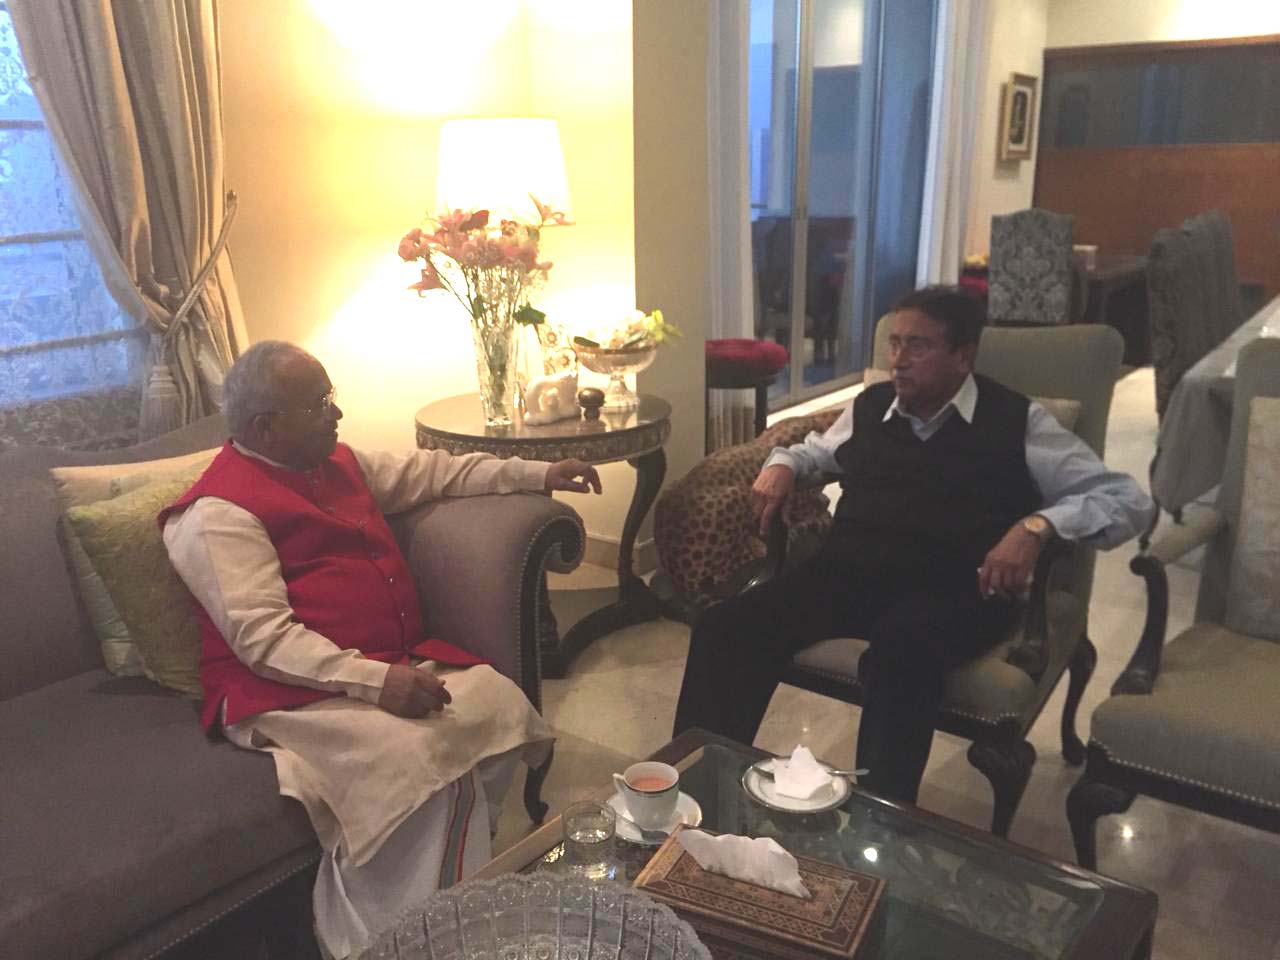 पाकिस्तान के भूतपूर्व राष्ट्रपति जनरल परवेज मुशर्रफ के साथ भारतीय विदेश नीति परिषद के अध्यक्ष डाॅ. वेदप्रताप वैदिक की एक लंबी मुलाकात जिसमें दोनों ने कश्मीर समस्या और भारत-पाक मुद्दे पर खुलकर बात की